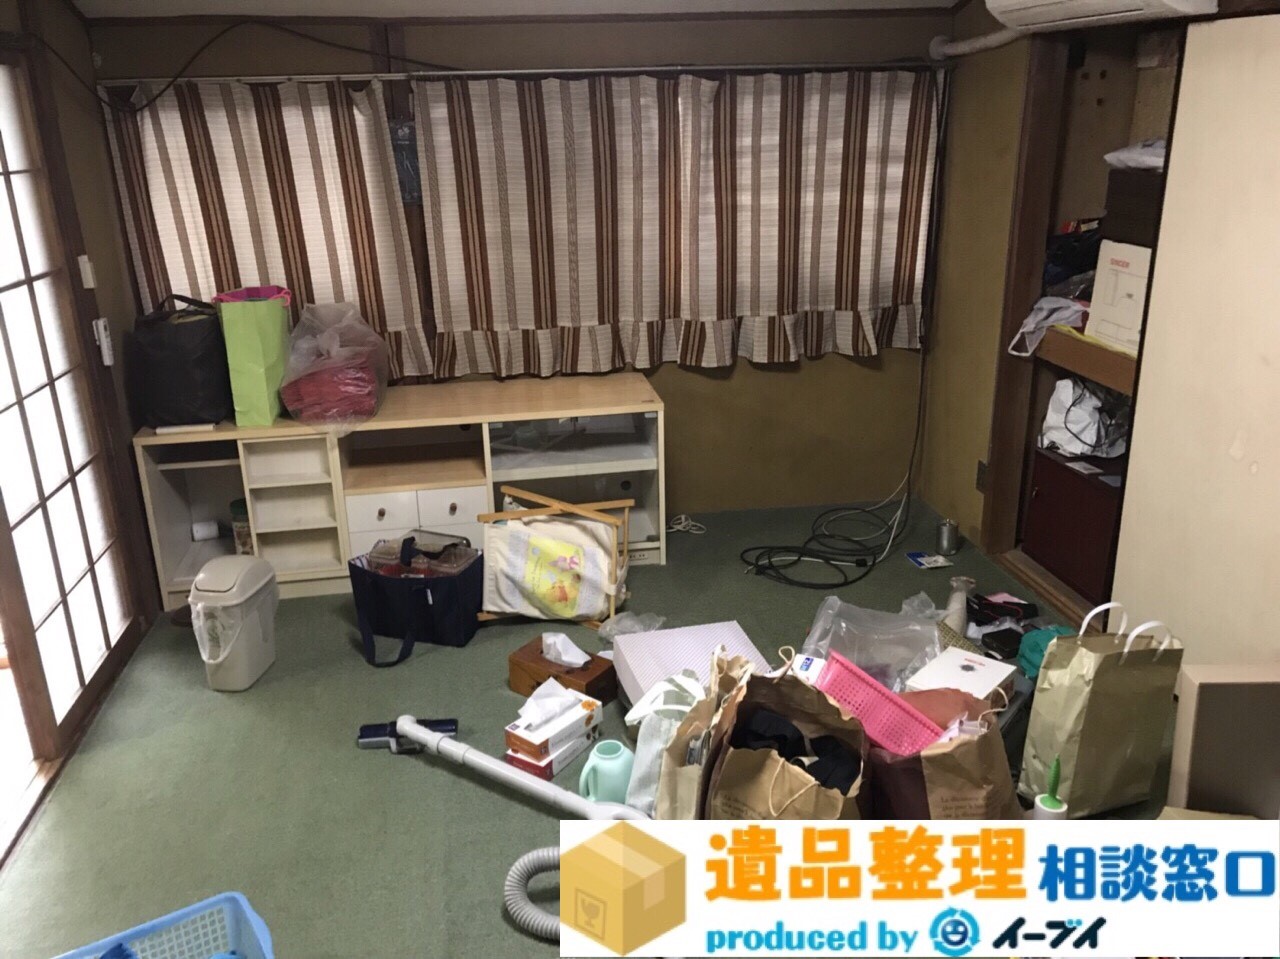 大阪府摂津市で遺品整理に伴い家具処分や生活用品を片付処分しました。のアイキャッチ